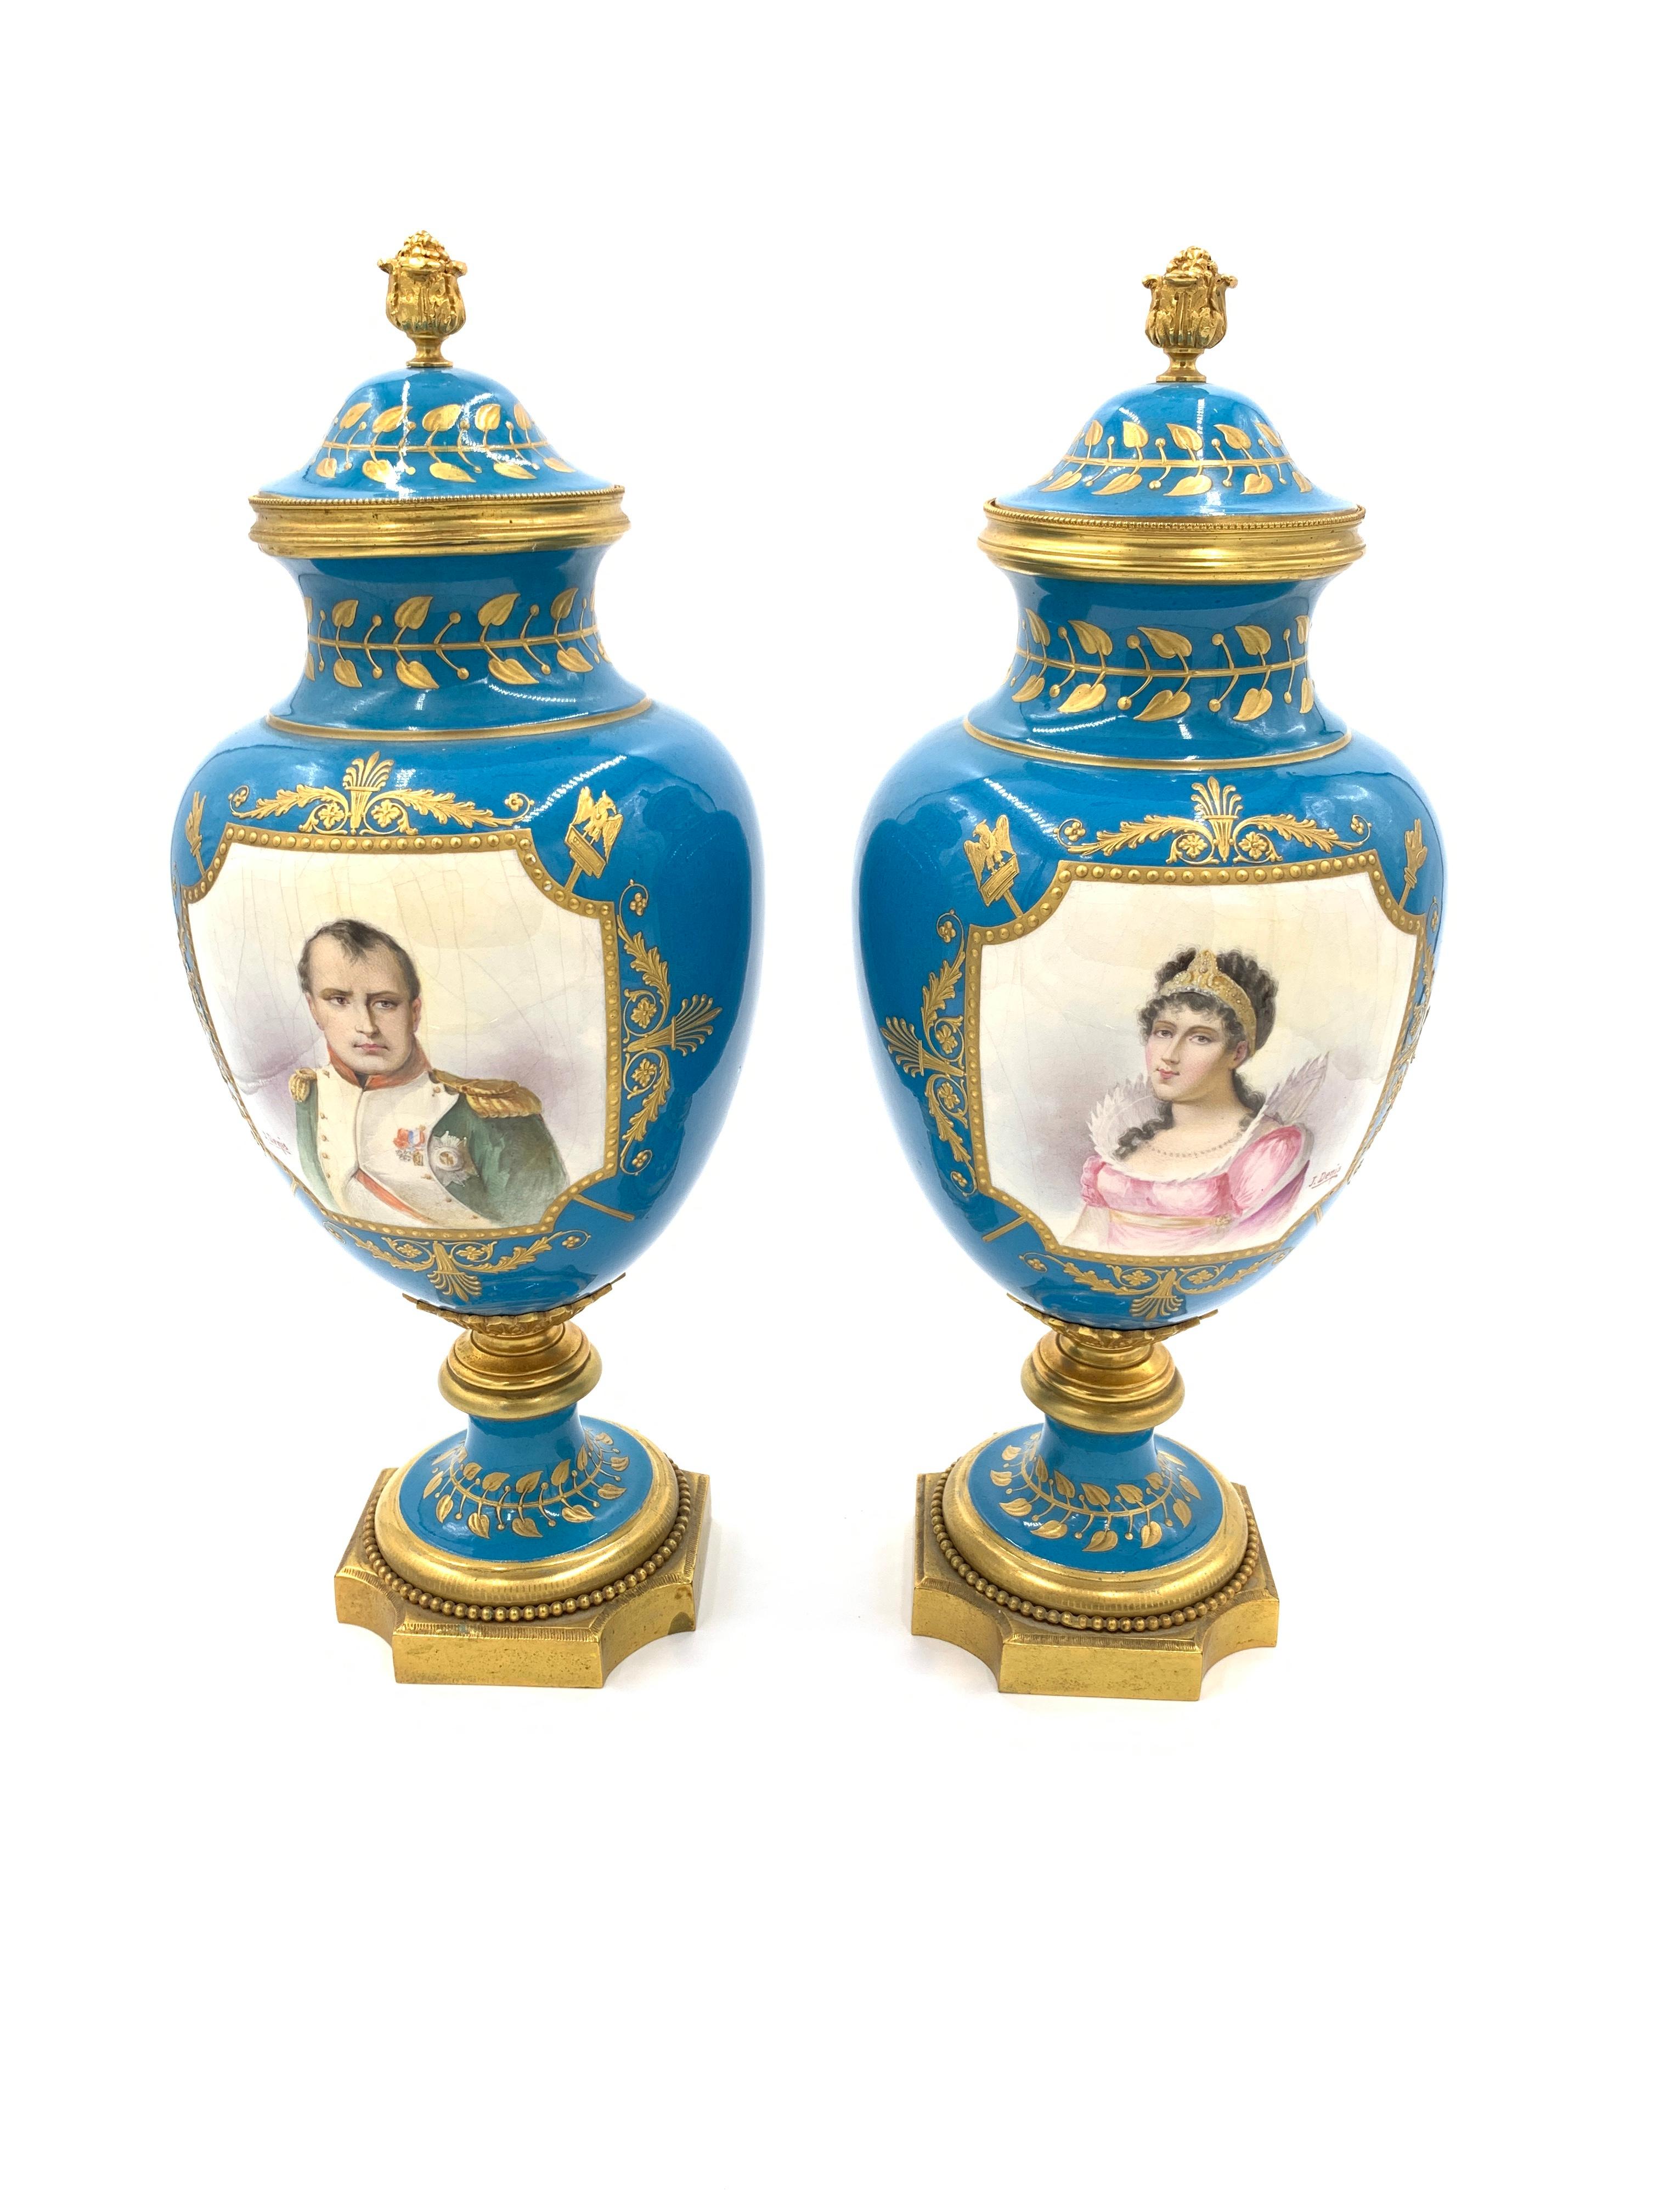 Magnifique paire de vases bleu ciel de style Sèvres, l'avant des vases représente Napoléon Bonaparte et son épouse Joséphine Bonaparte (Impératrice Joséphine), les deux portraits sont signés par l'artiste J.Denis, l'arrière des vases représente deux